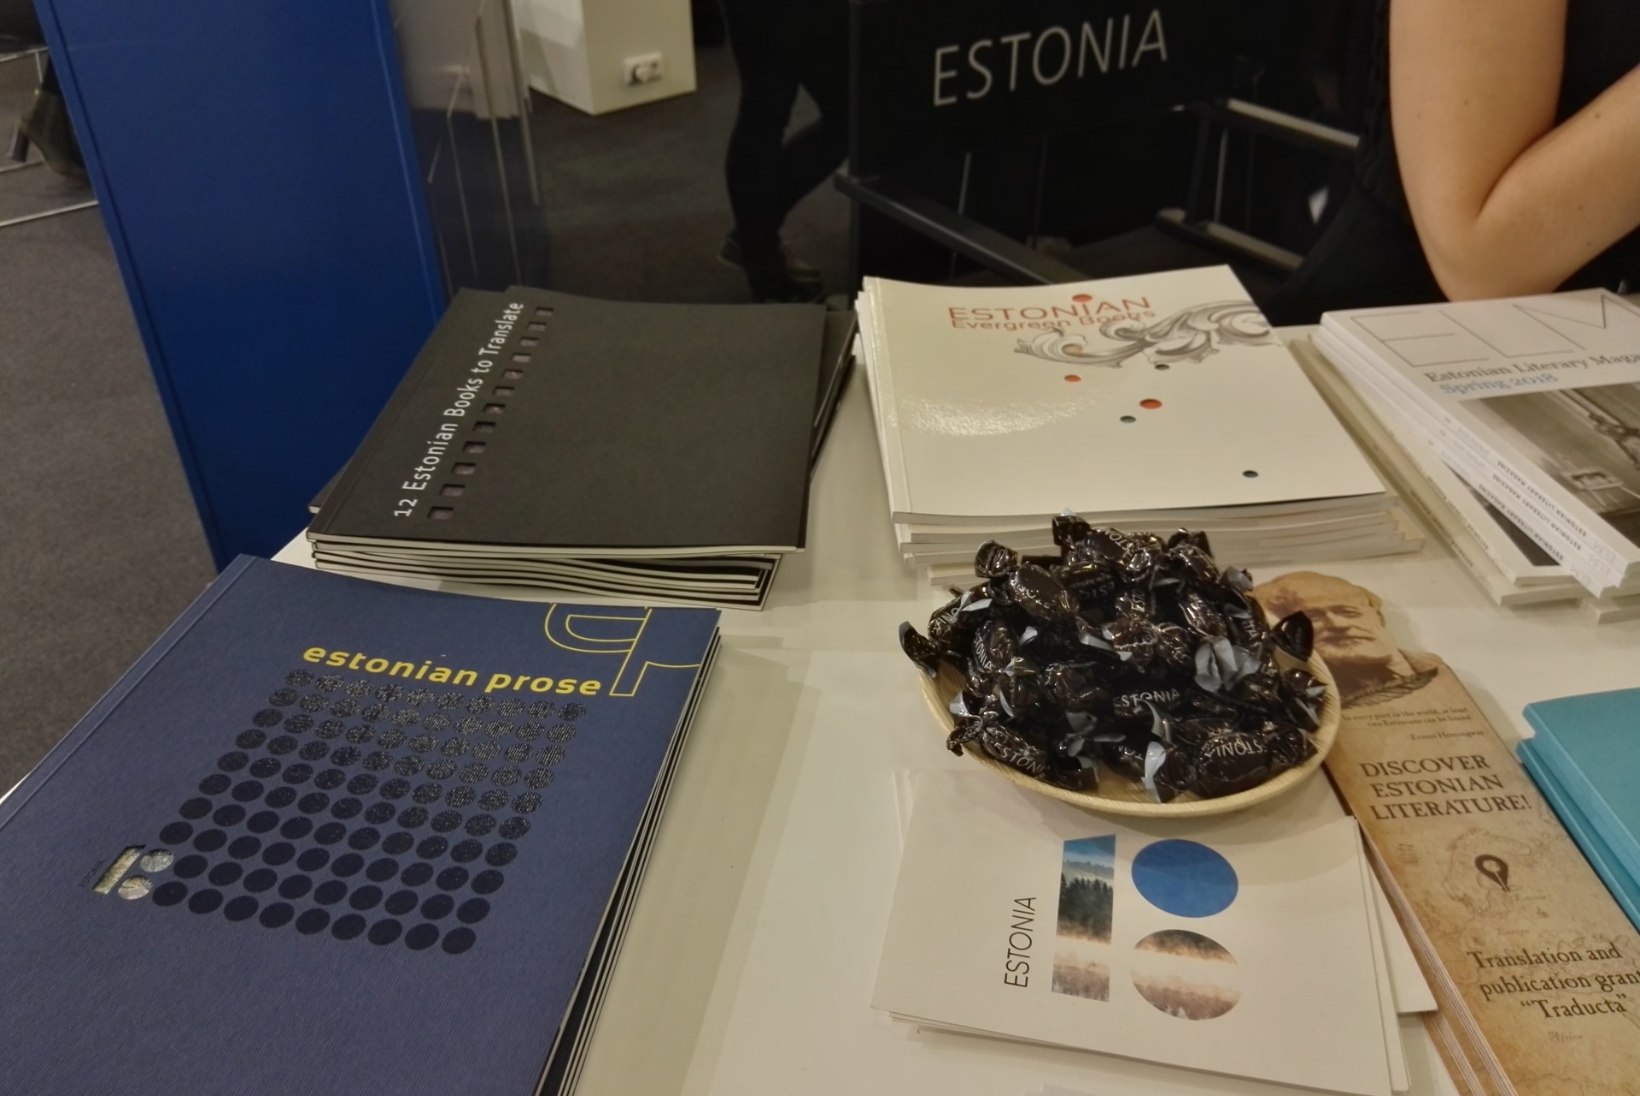 Kuidas Eesti kirjandus laia maailma lennutada?